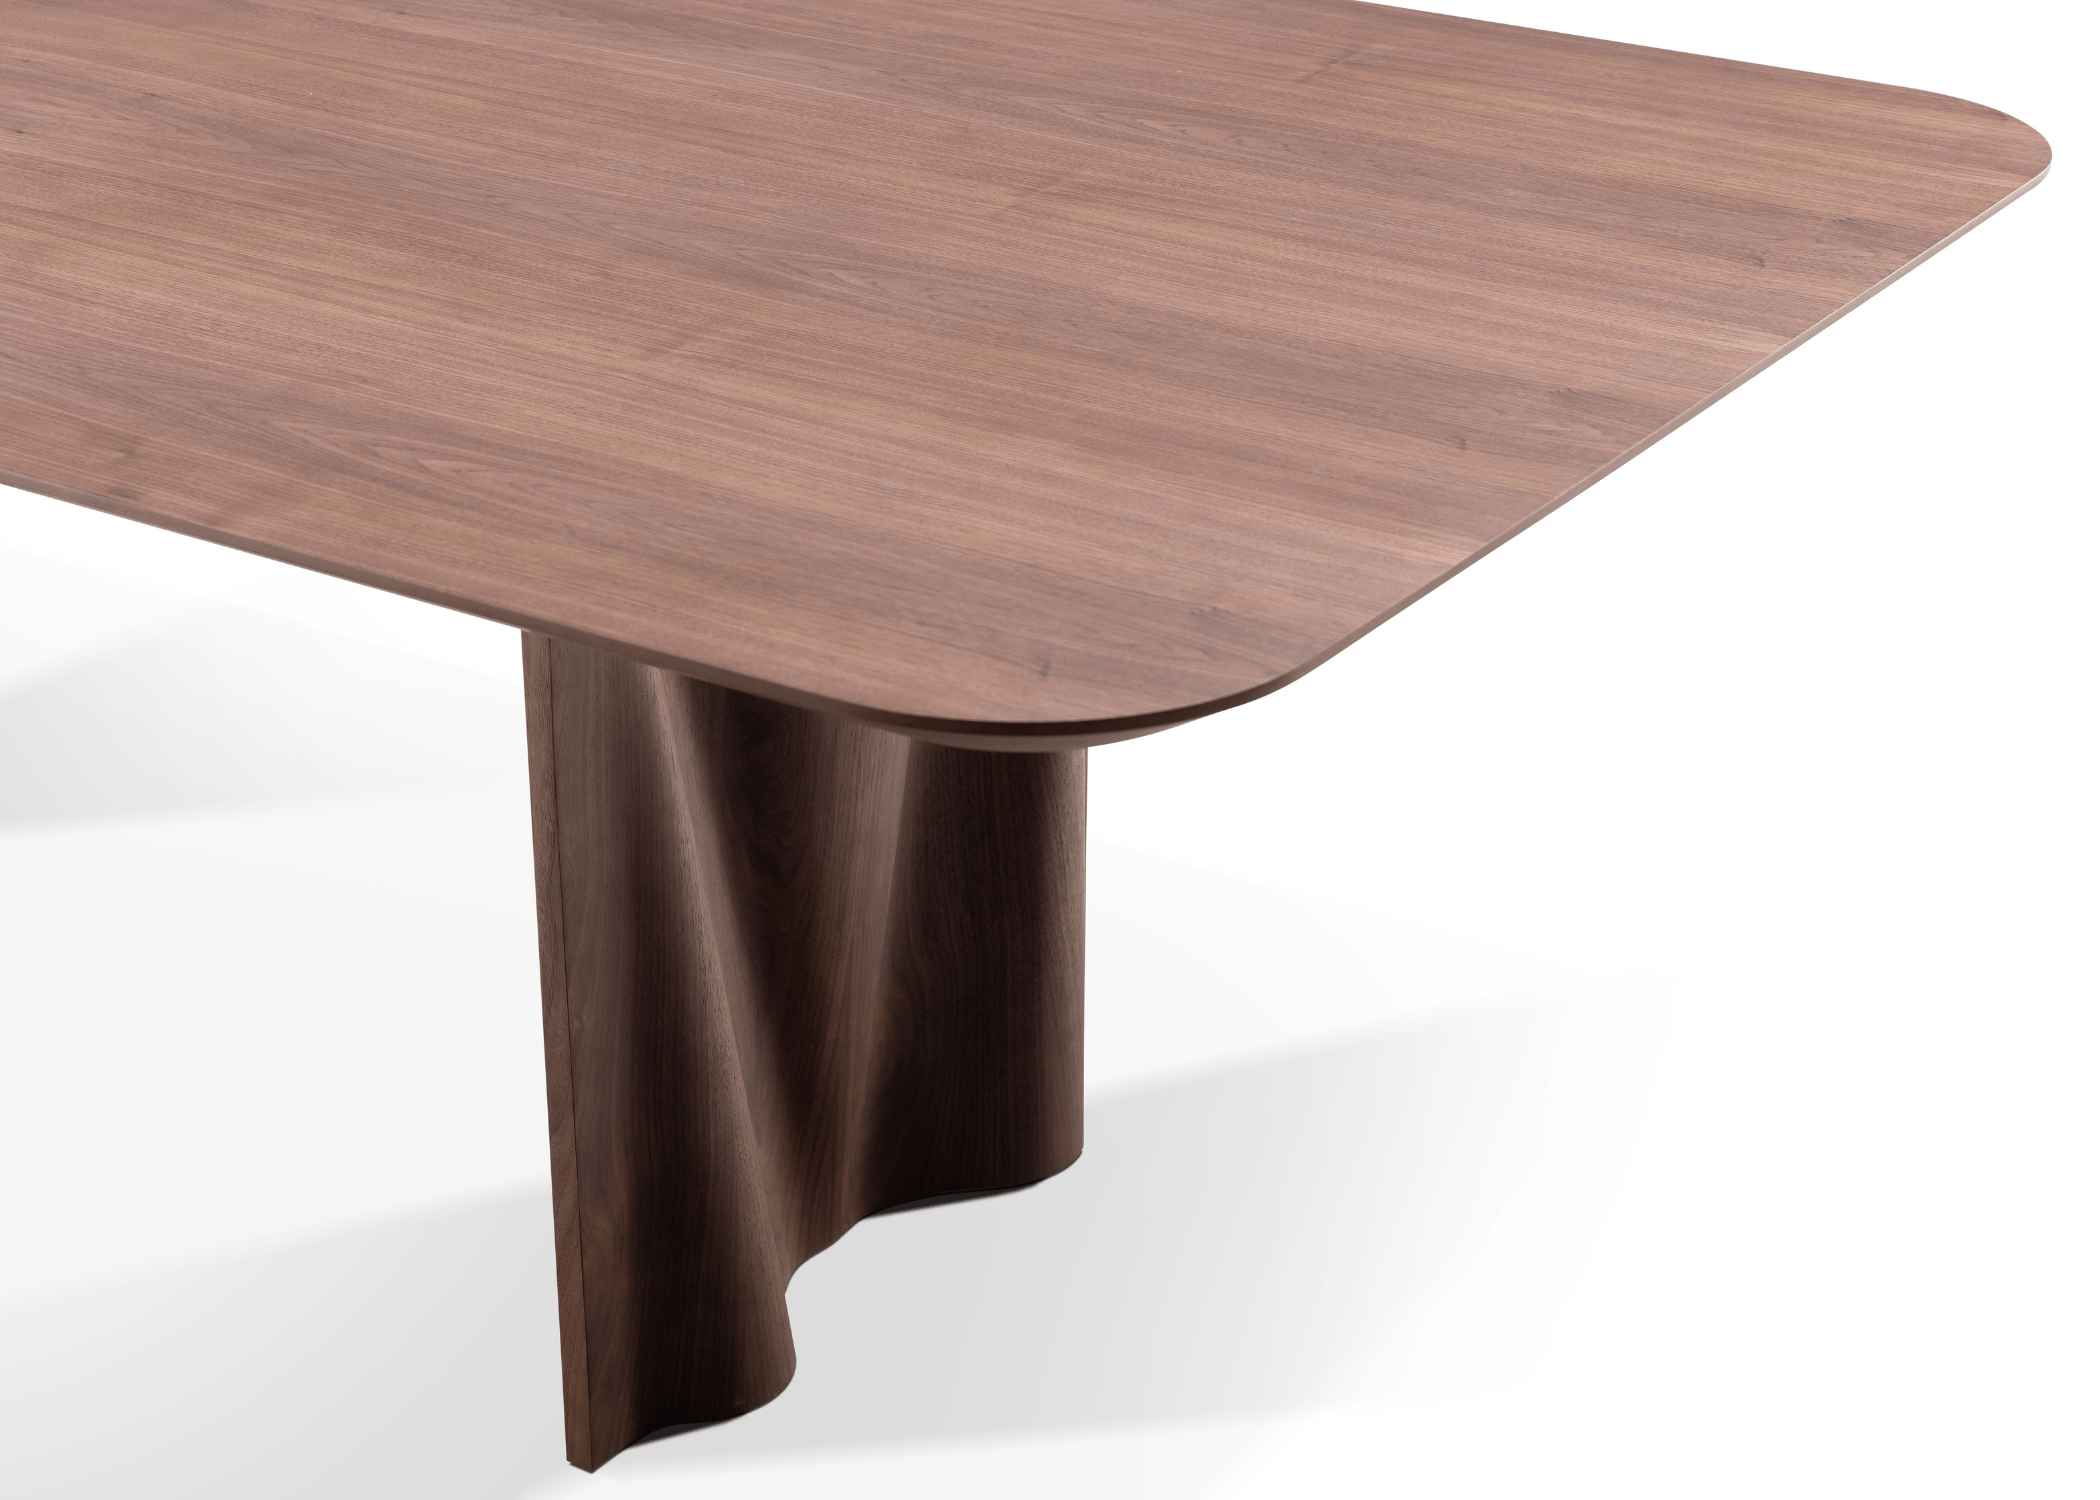 A mesa de jantar Master é muito mais do que uma simples peça de mobiliário; é uma afirmação de estilo e elegância